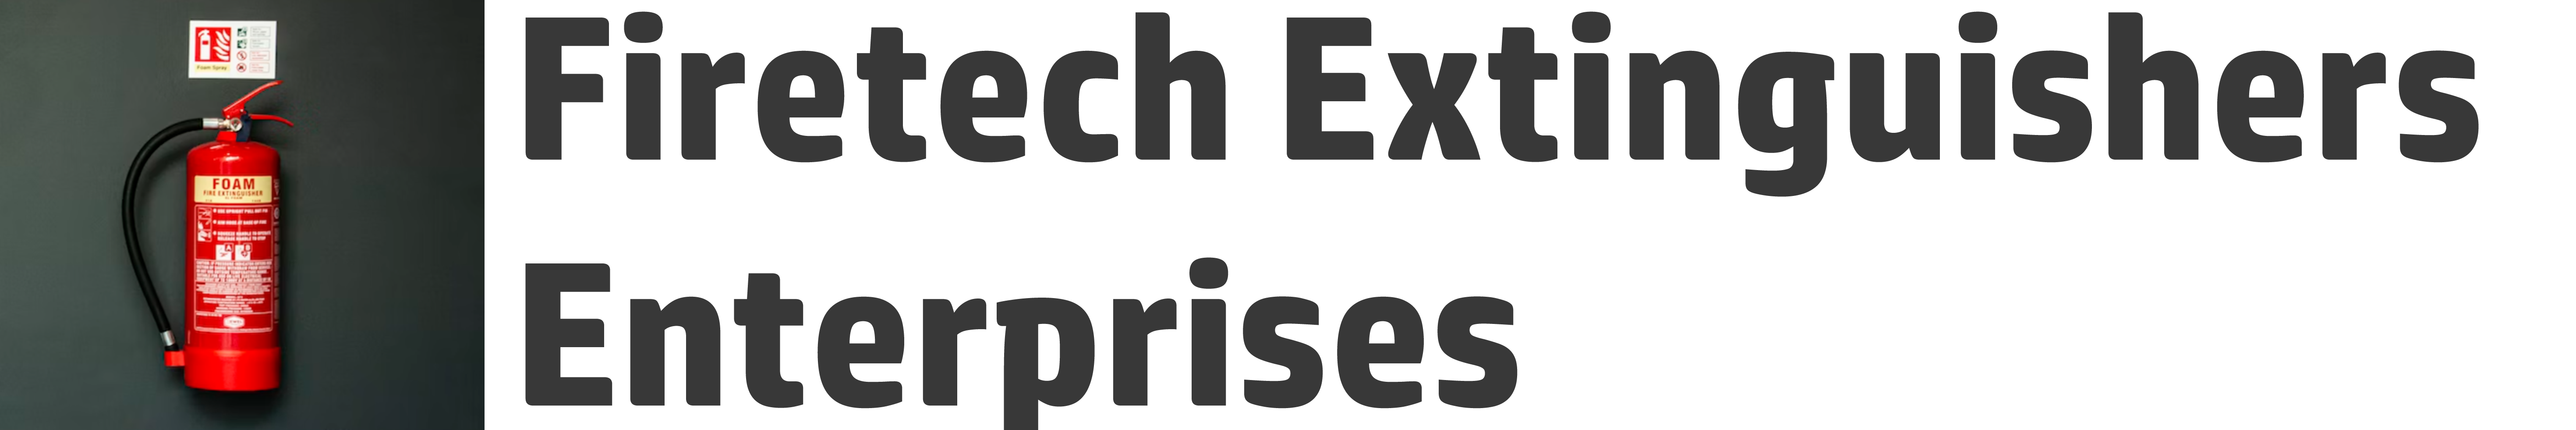 Firetech Extinguishers Enterprises